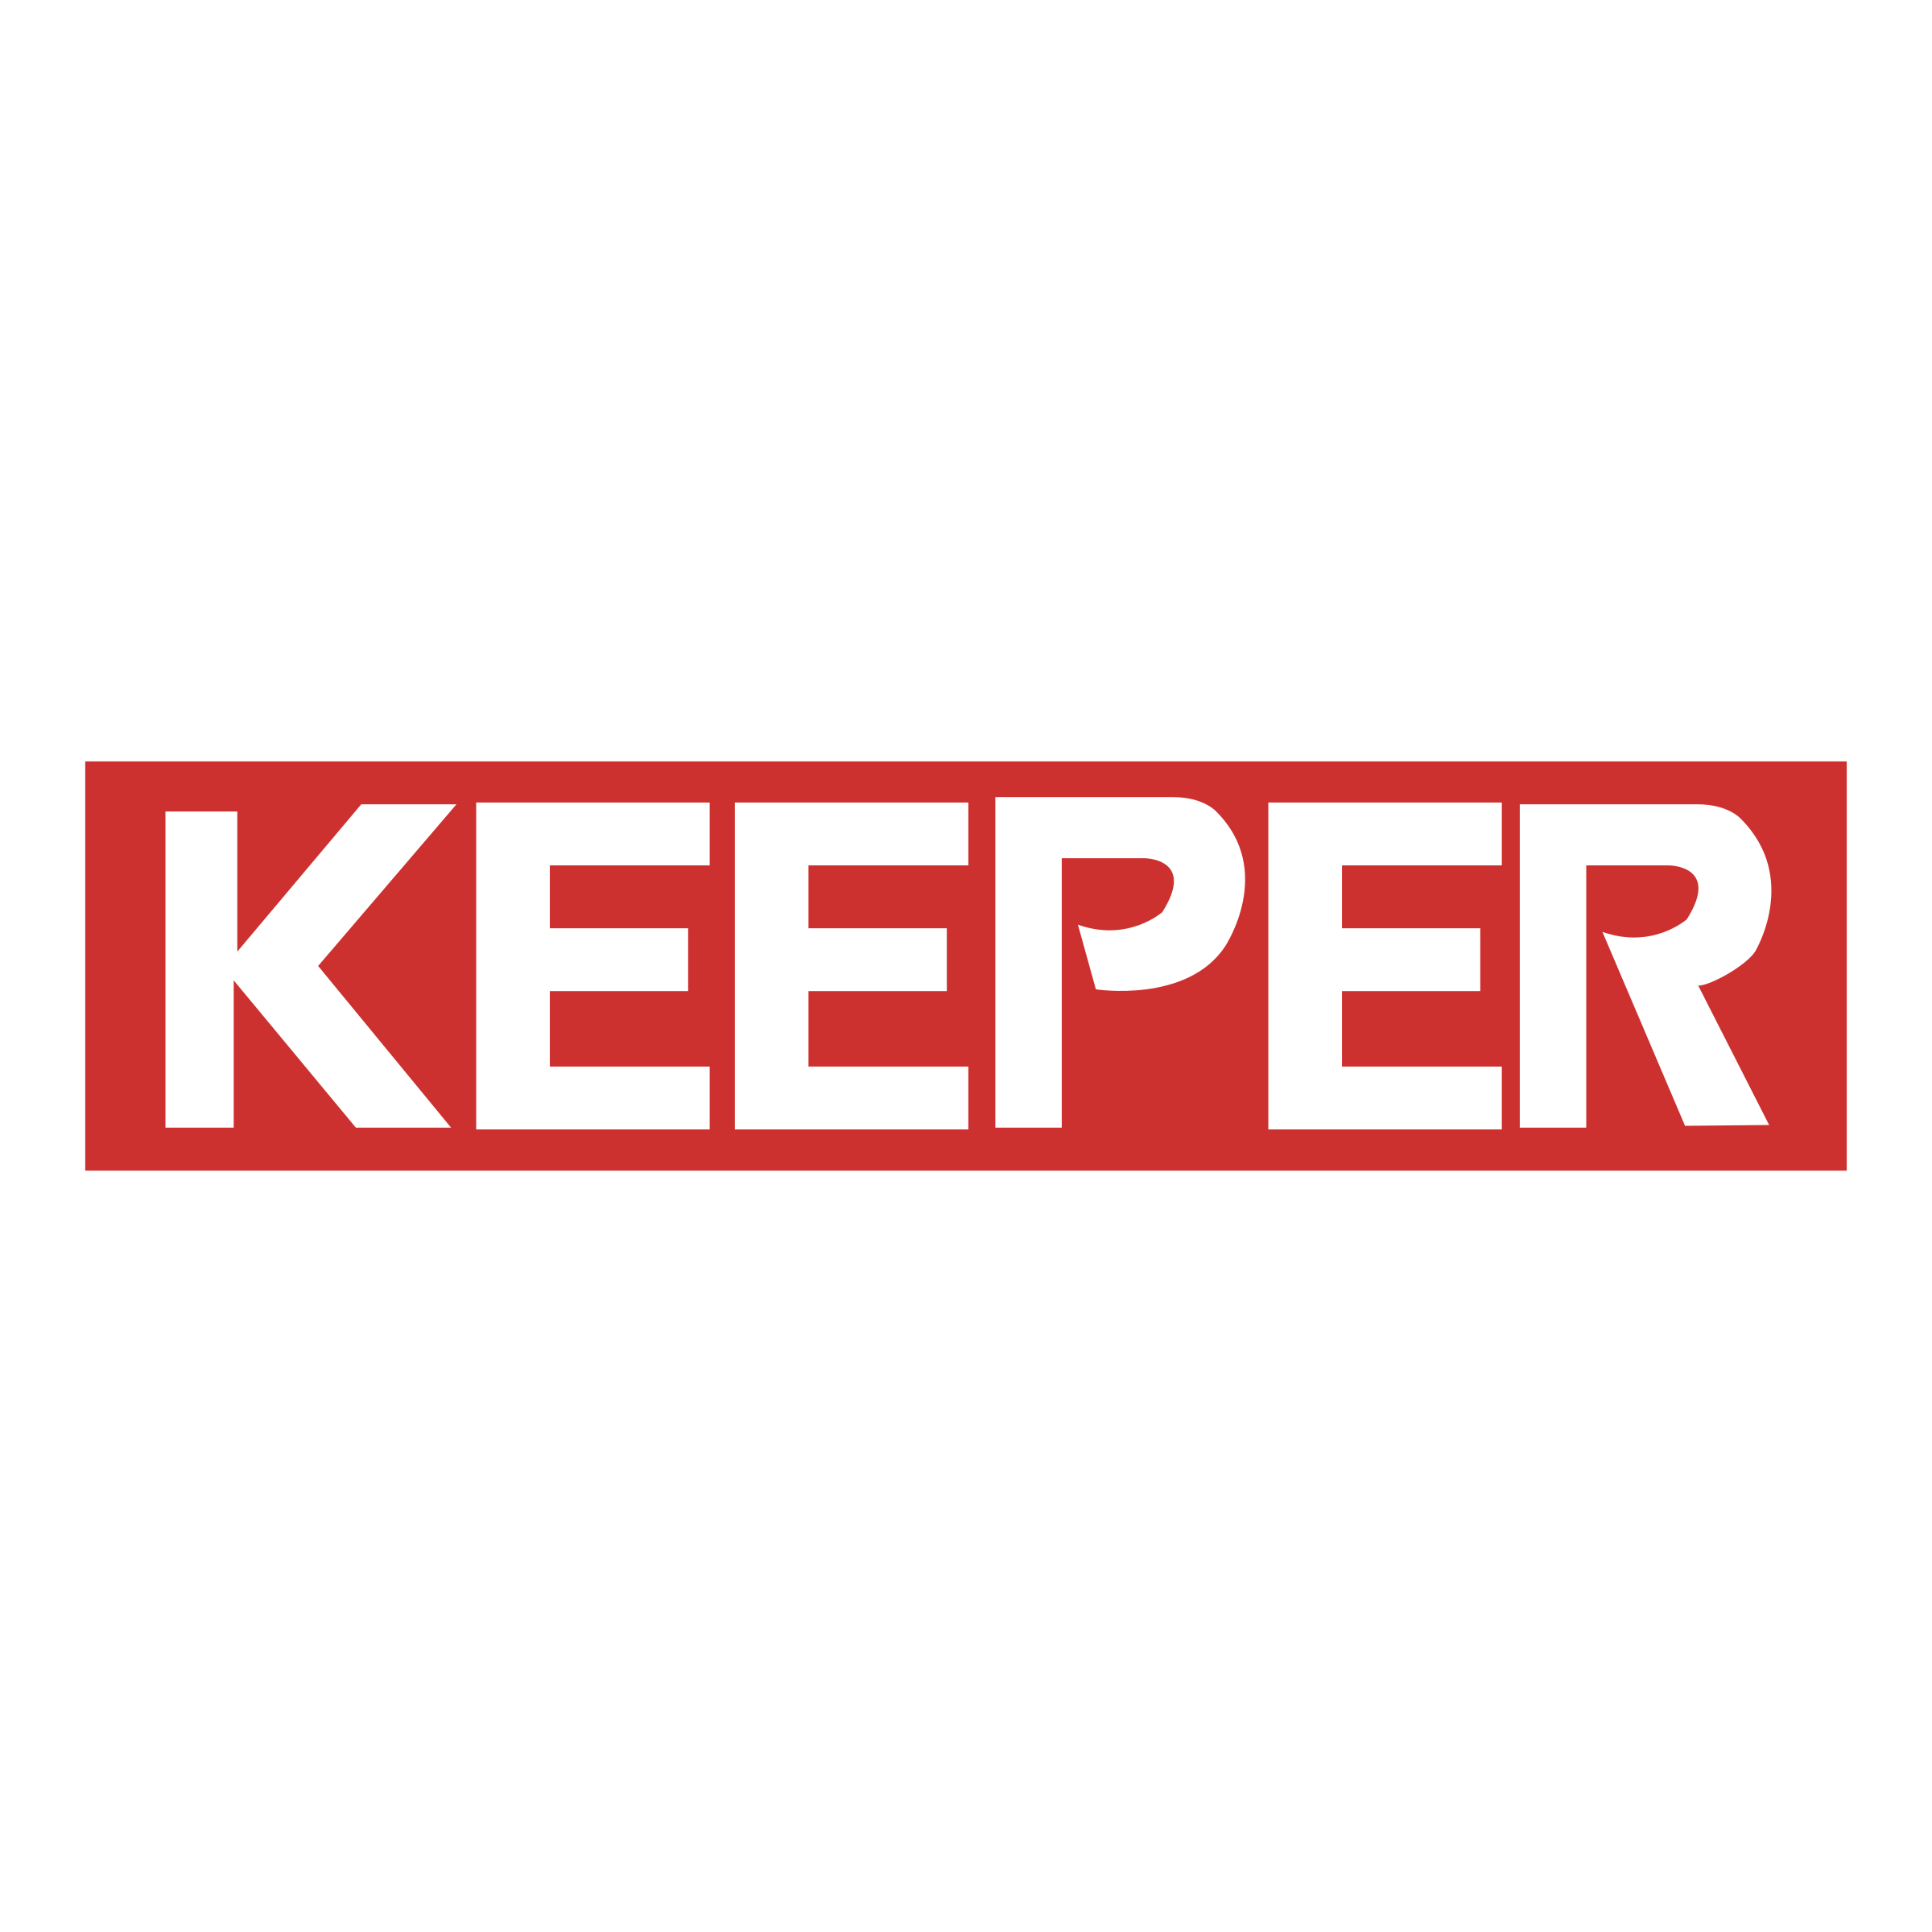 Keeper Logo - Keeper Logo PNG Transparent & SVG Vector